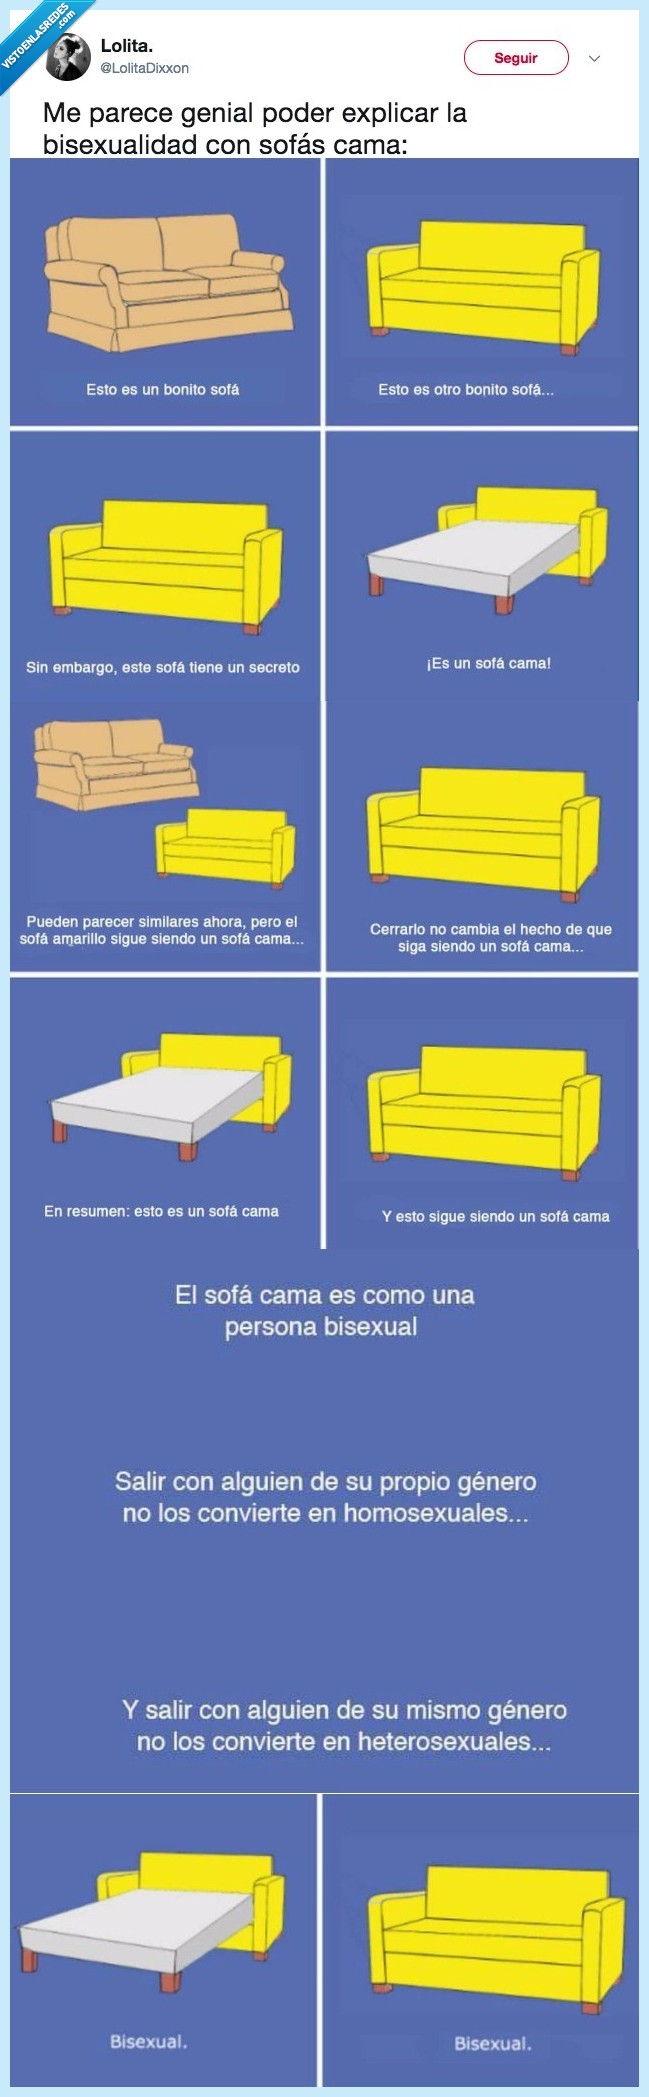 469564 - ¿Te cuesta entender el concepto? Estos sofás camas te lo explican de maravilla, por @lolitadixxon